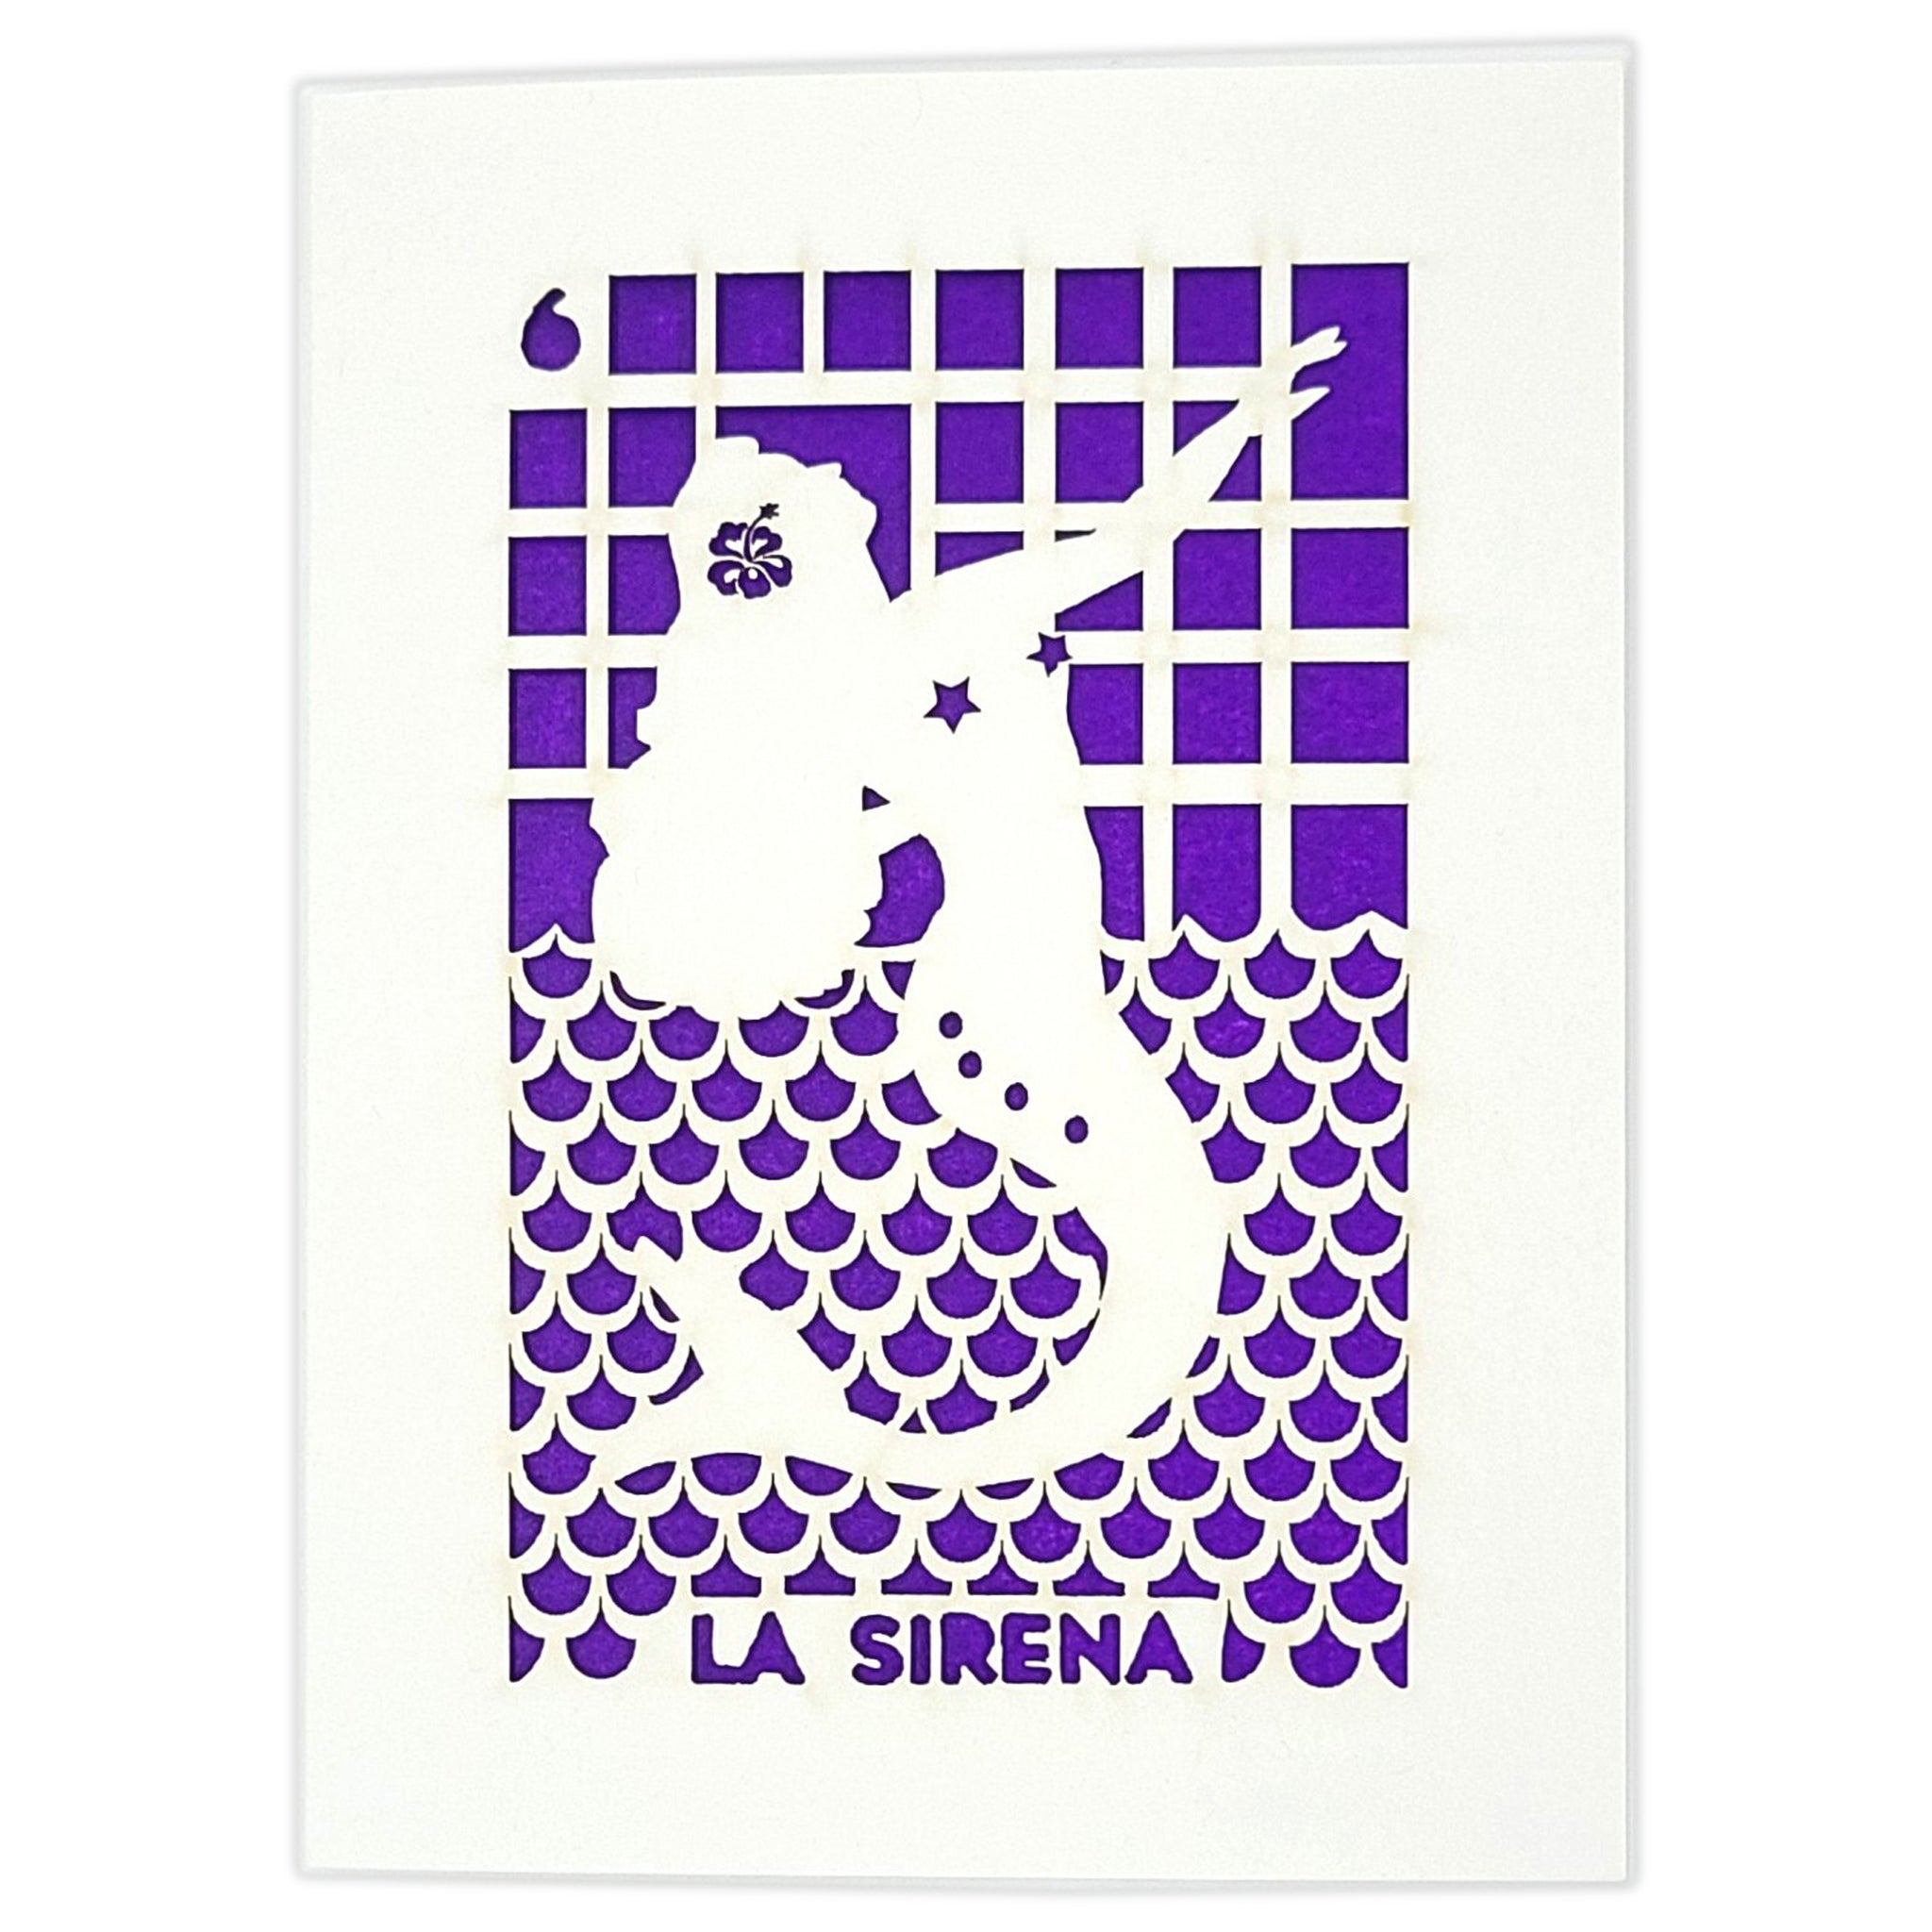 Papel Picado Greeting Card: La Sirena Loteria